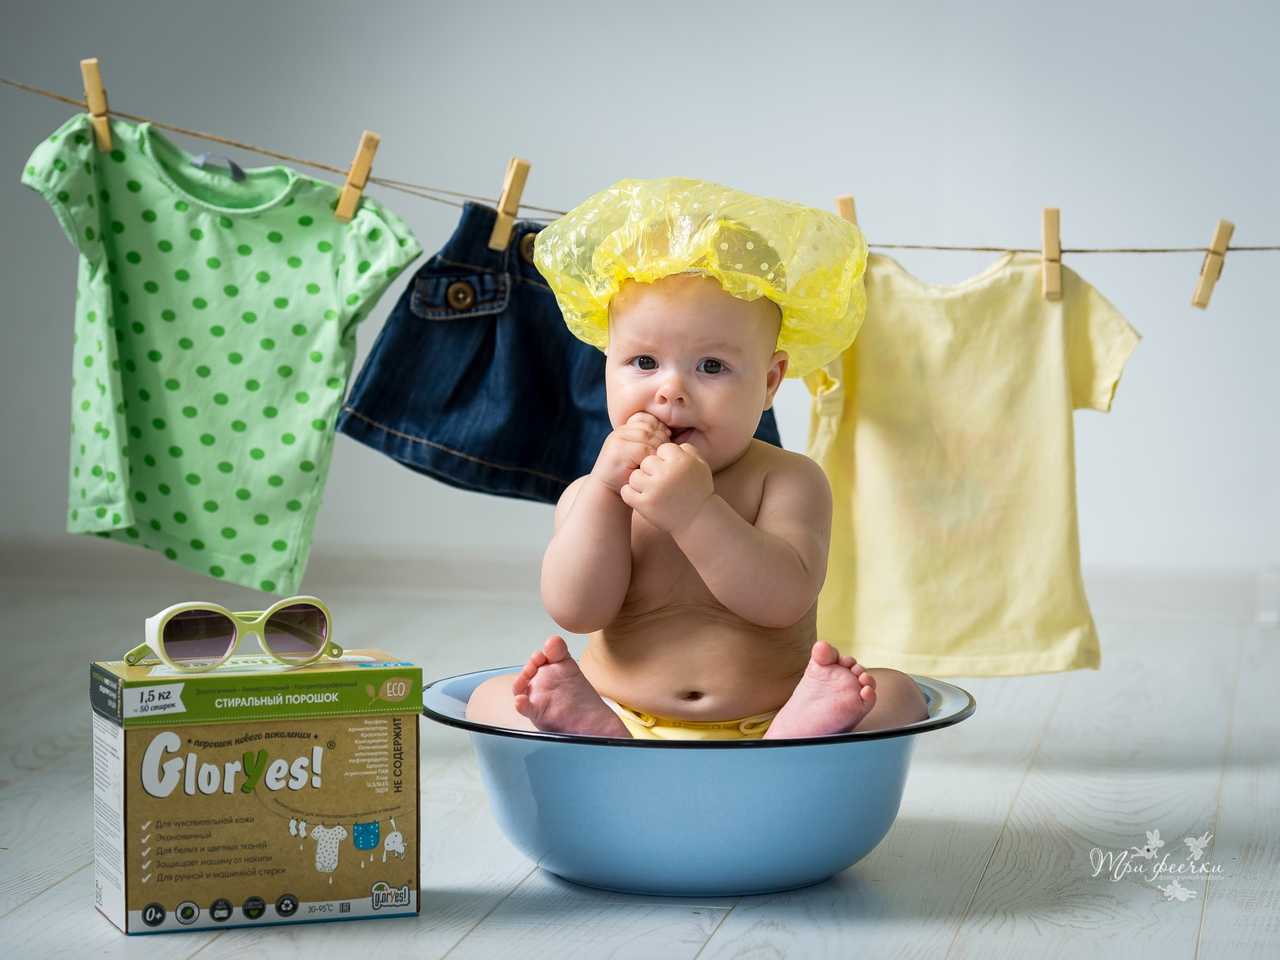 Школа мам: учимся стирать одежду новорожденного малыша